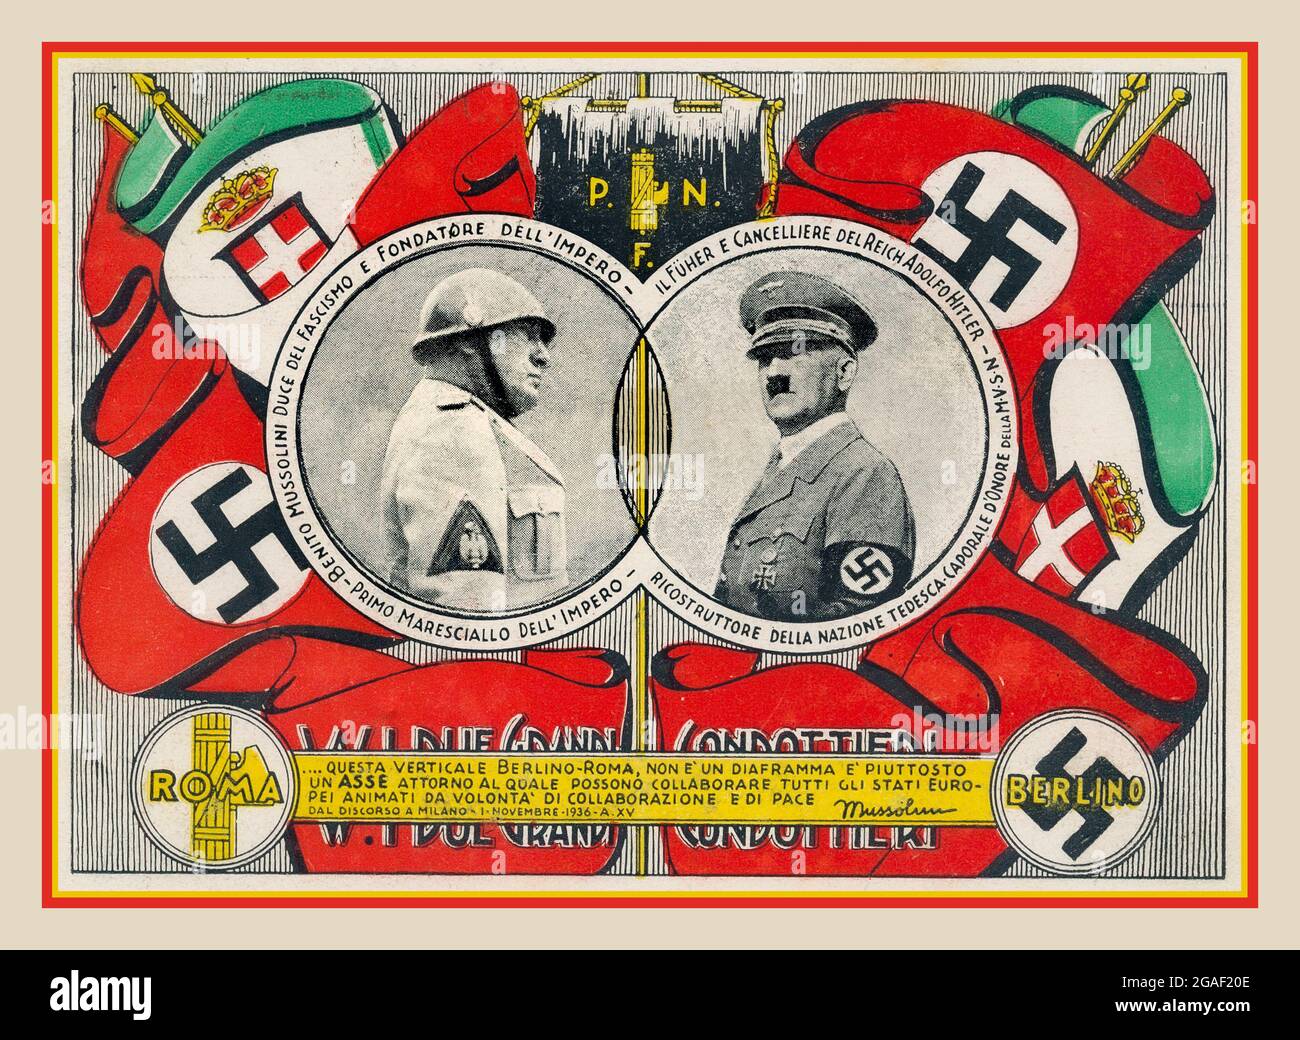 HITLER MUSSOLINI 1936, Italian Facist Propaganda Poster Card che promuove la stretta collaborazione tra Adolf Hitler Nazi Party Germany e El Duce Benito Mussolini Facist Party Italy. Parte dell'asse WW2 del male Foto Stock